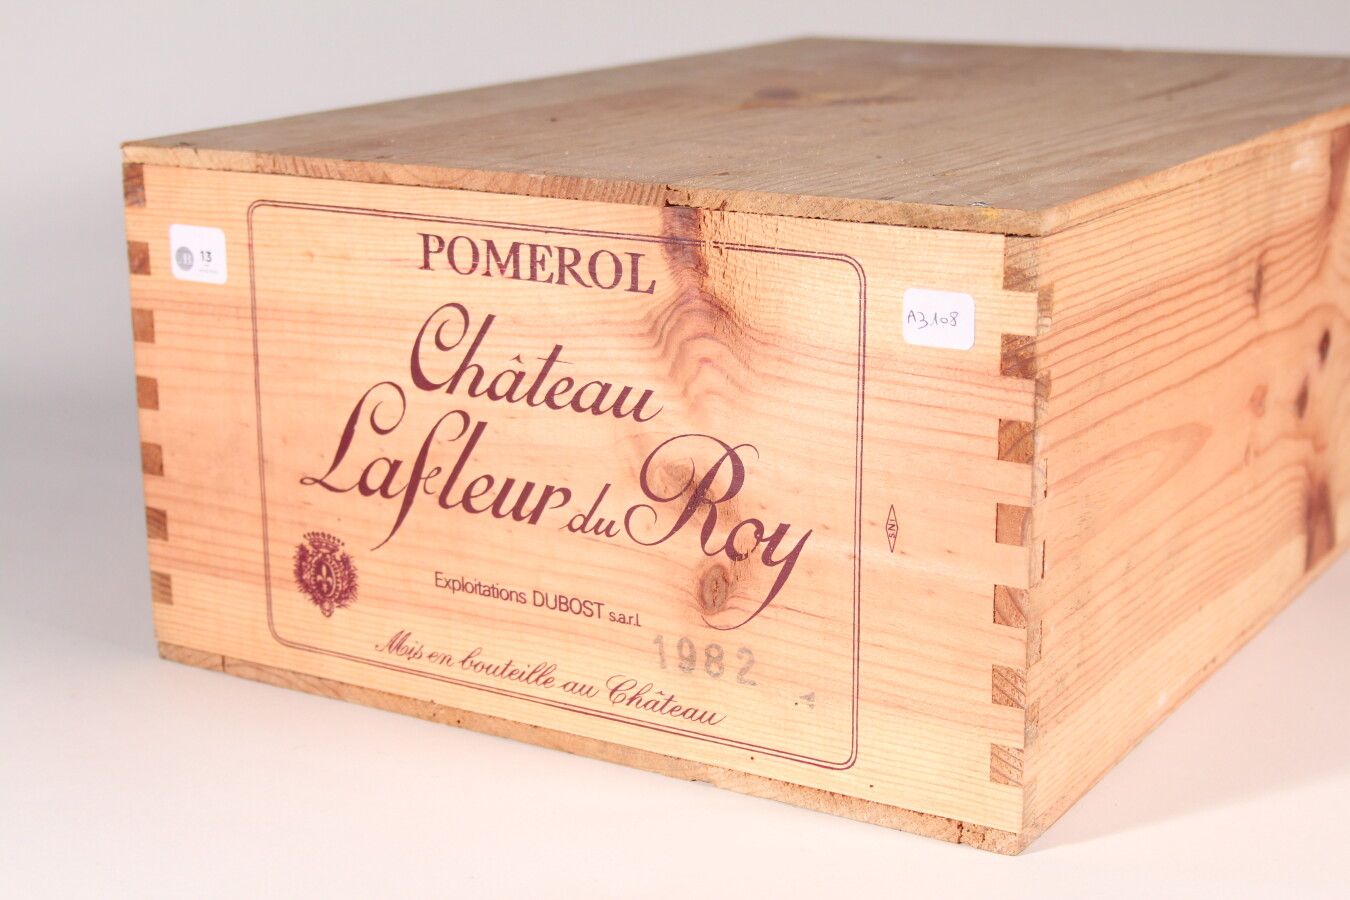 Null 1982 - Château La Fleur du Roy

Pomerol Rouge - 12 blles CBO